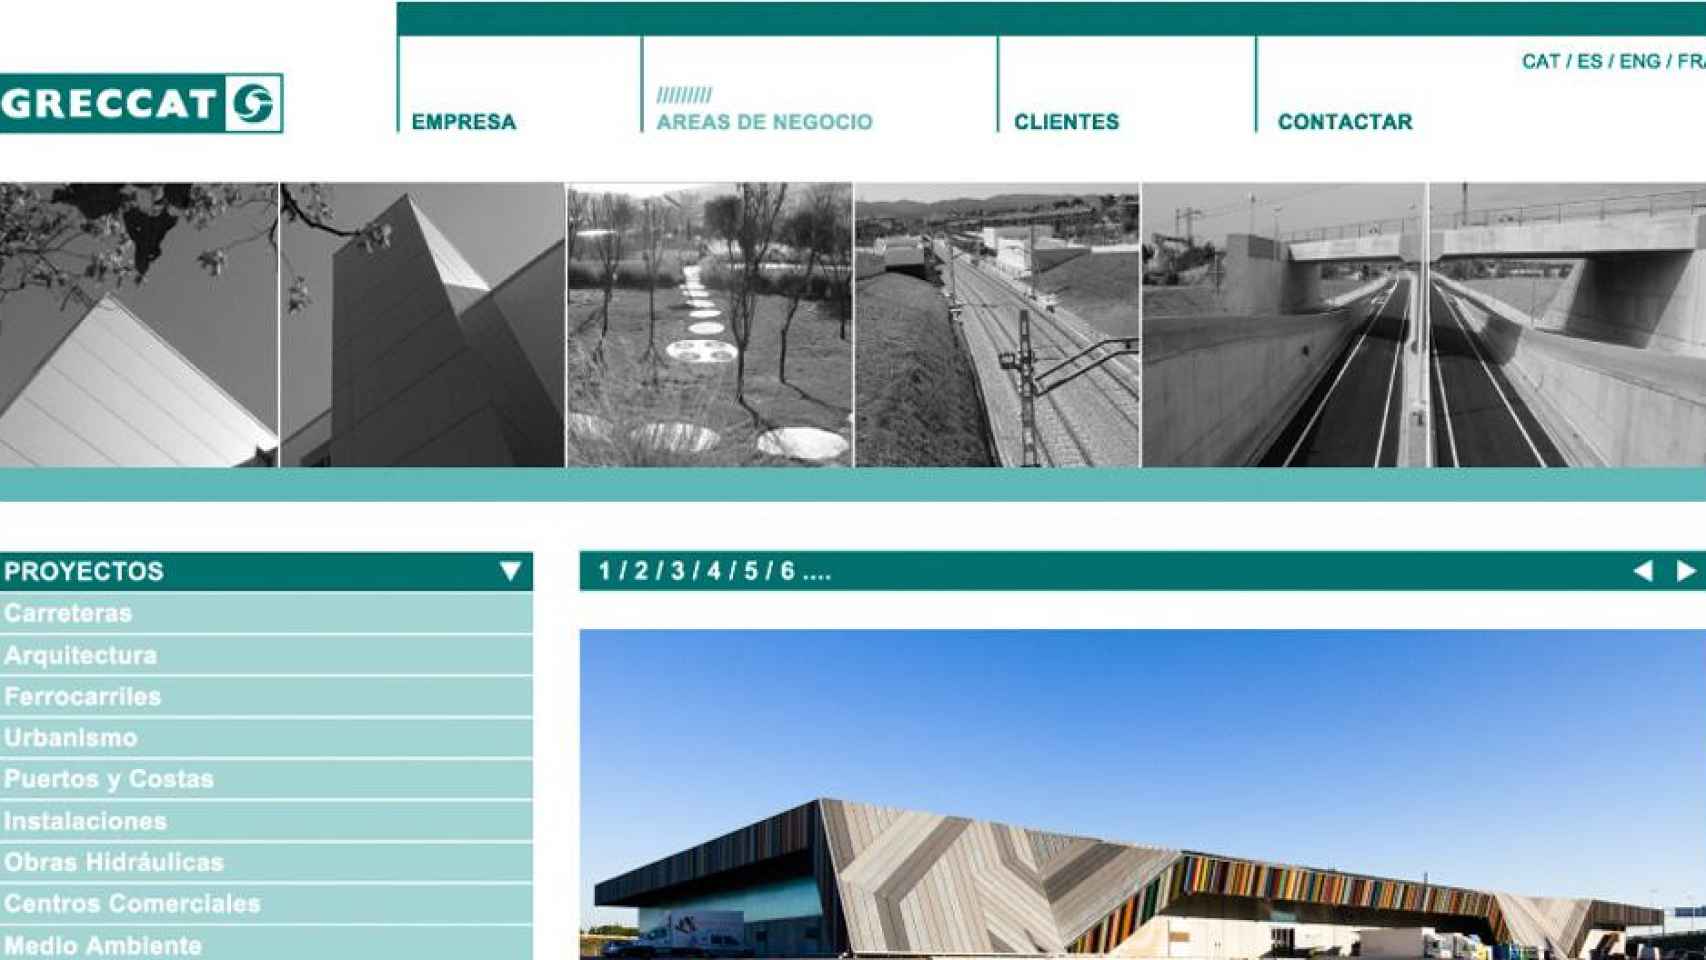 Web de la compañía Greccat, dedicada a la prestación de servicios de ingeniería y arquitectura